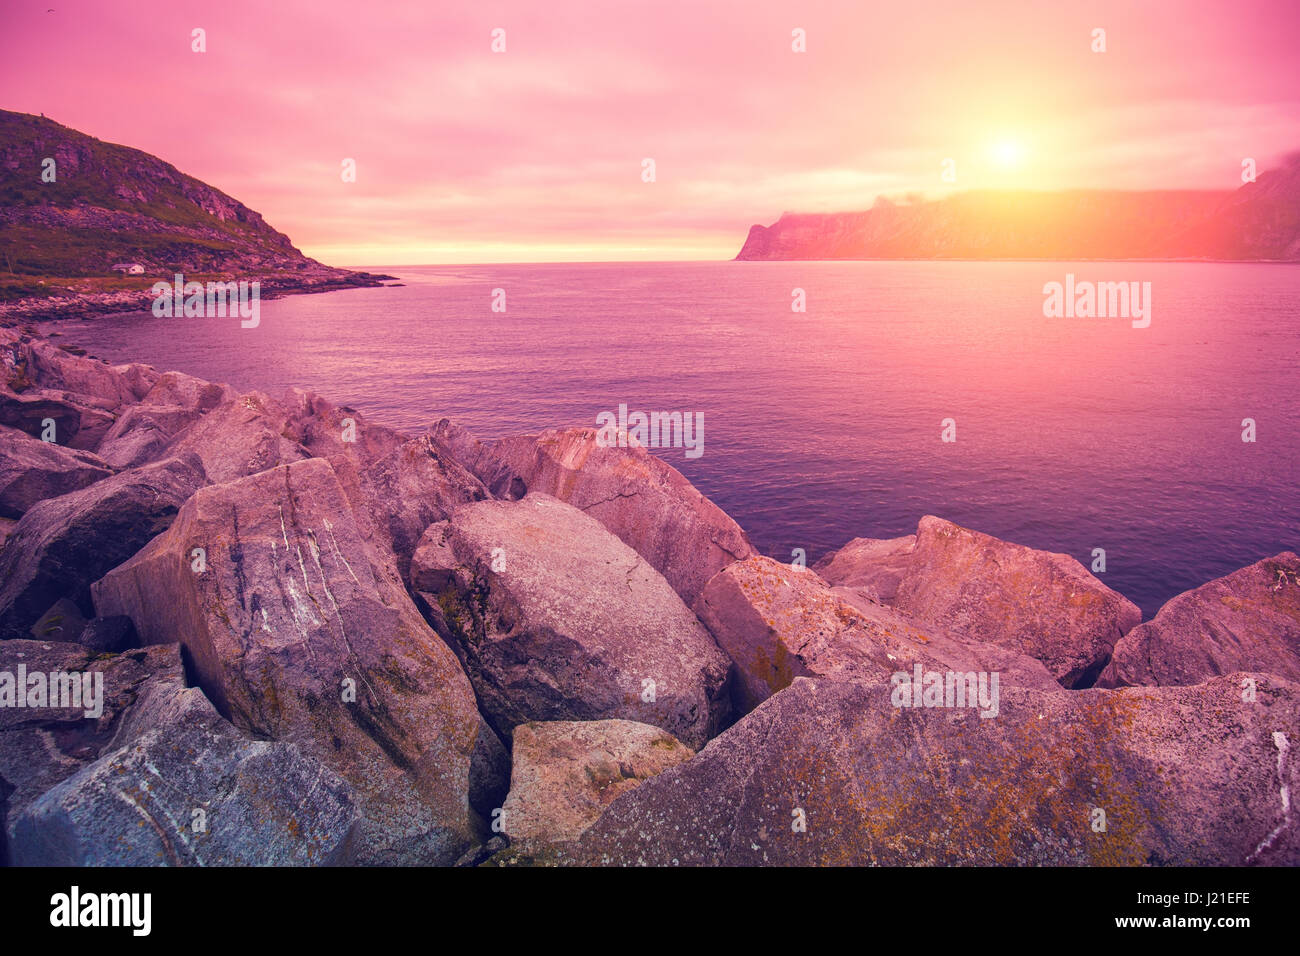 Fjord, plage rocheuse à rose rose coucher de soleil, nature de la Norvège. L'île de Senja. Magnifique baie. Banque D'Images